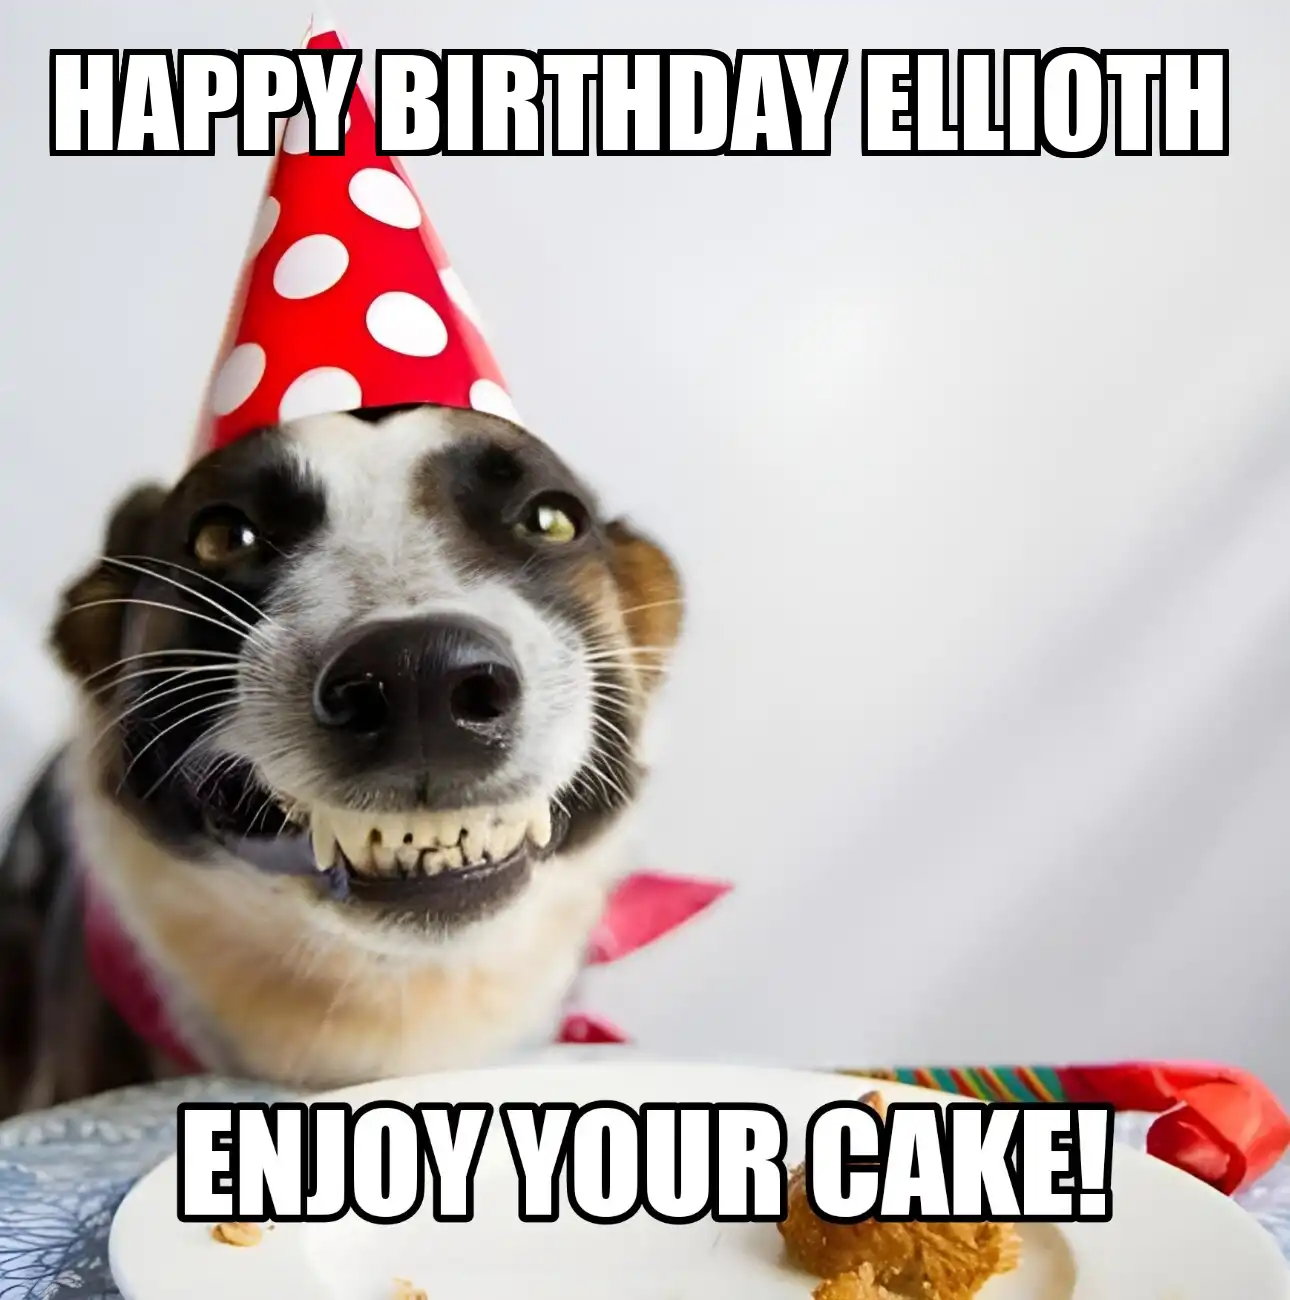 Happy Birthday Ellioth Enjoy Your Cake Dog Meme